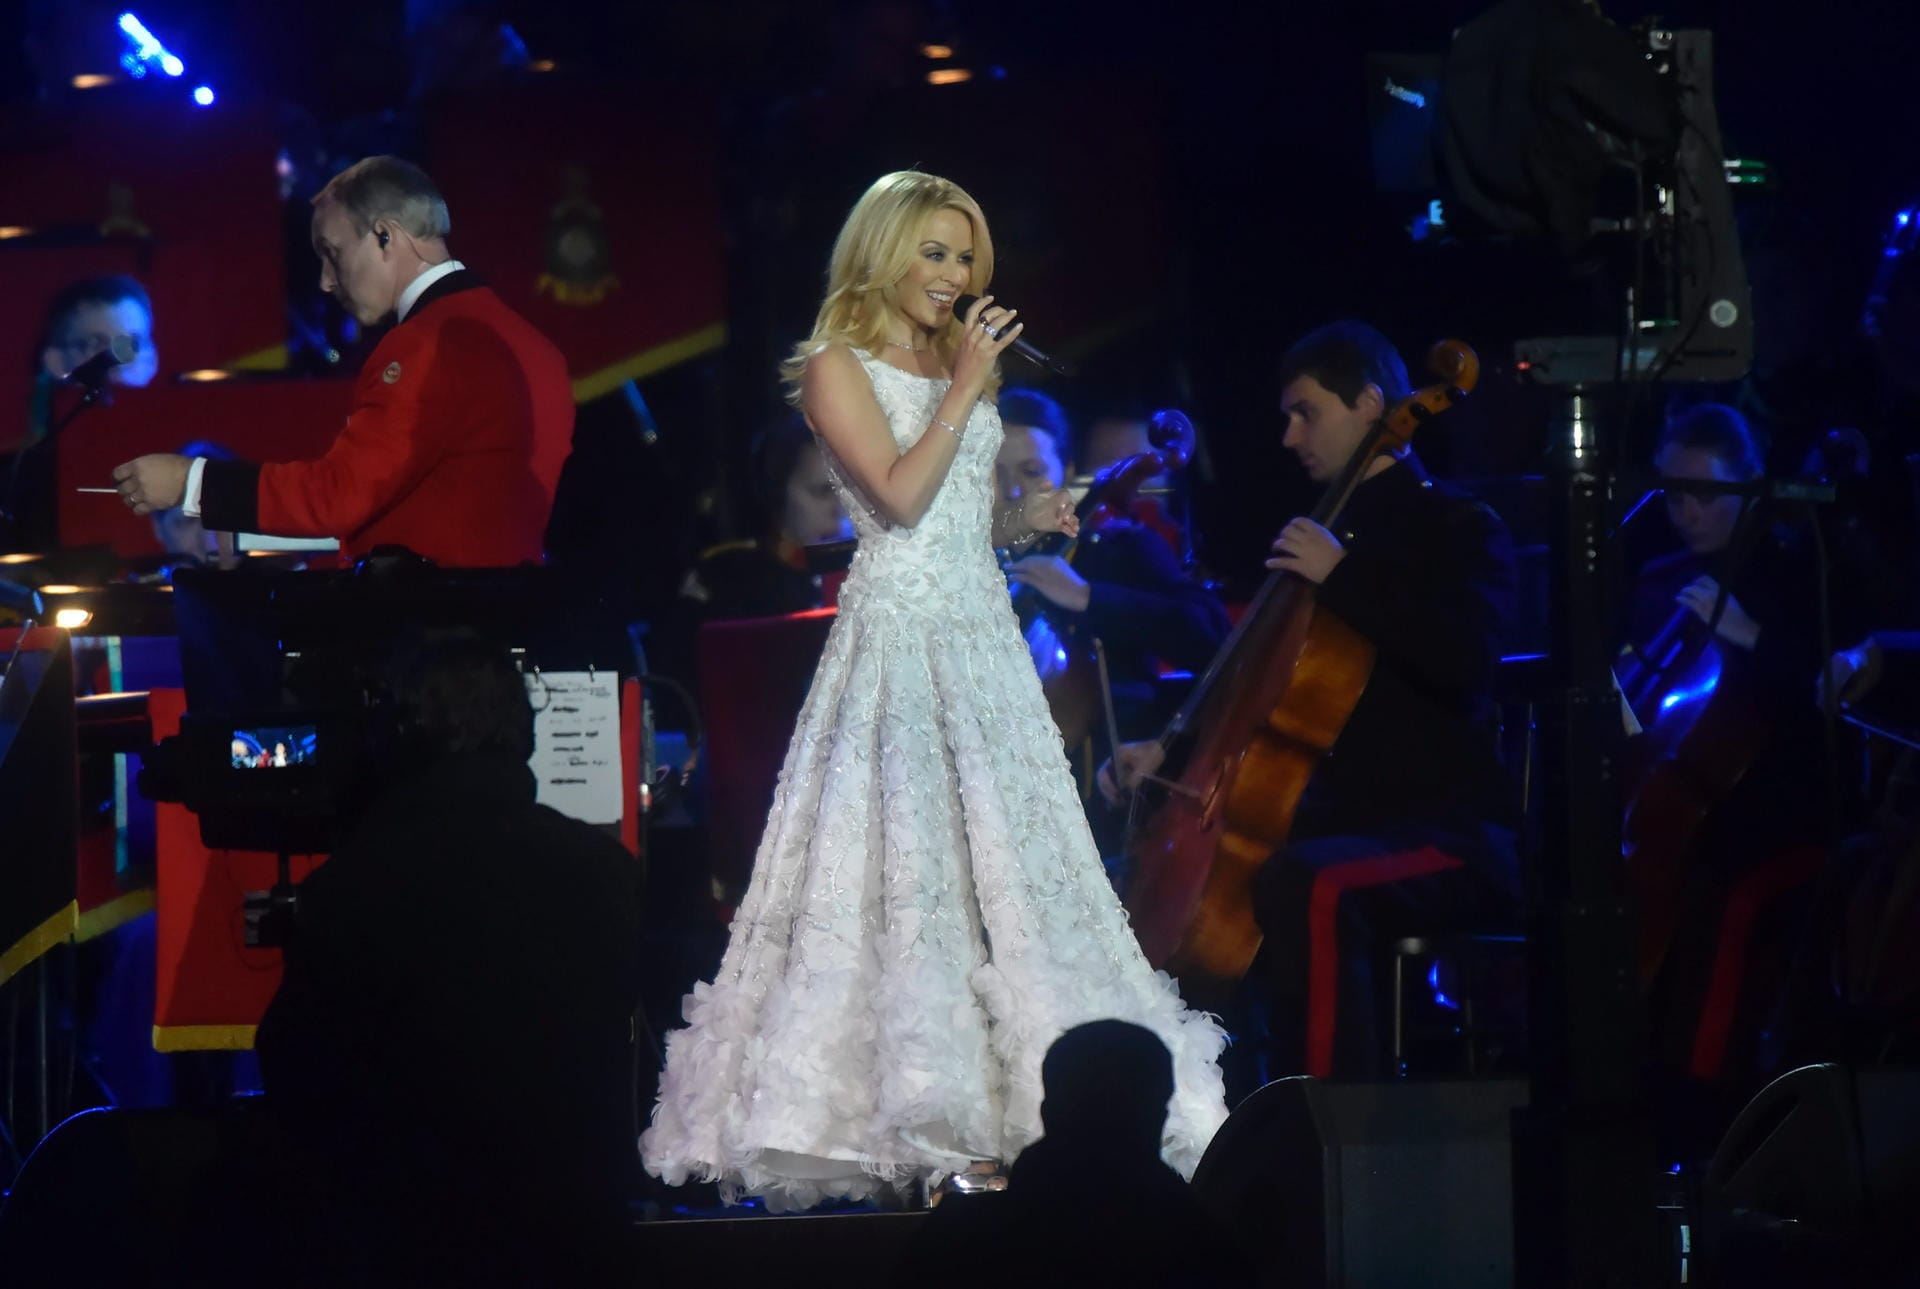 Zur Abrundung des Programms traten zahlreiche Stars auf. Kylie Minogue sang "I Believe In You".